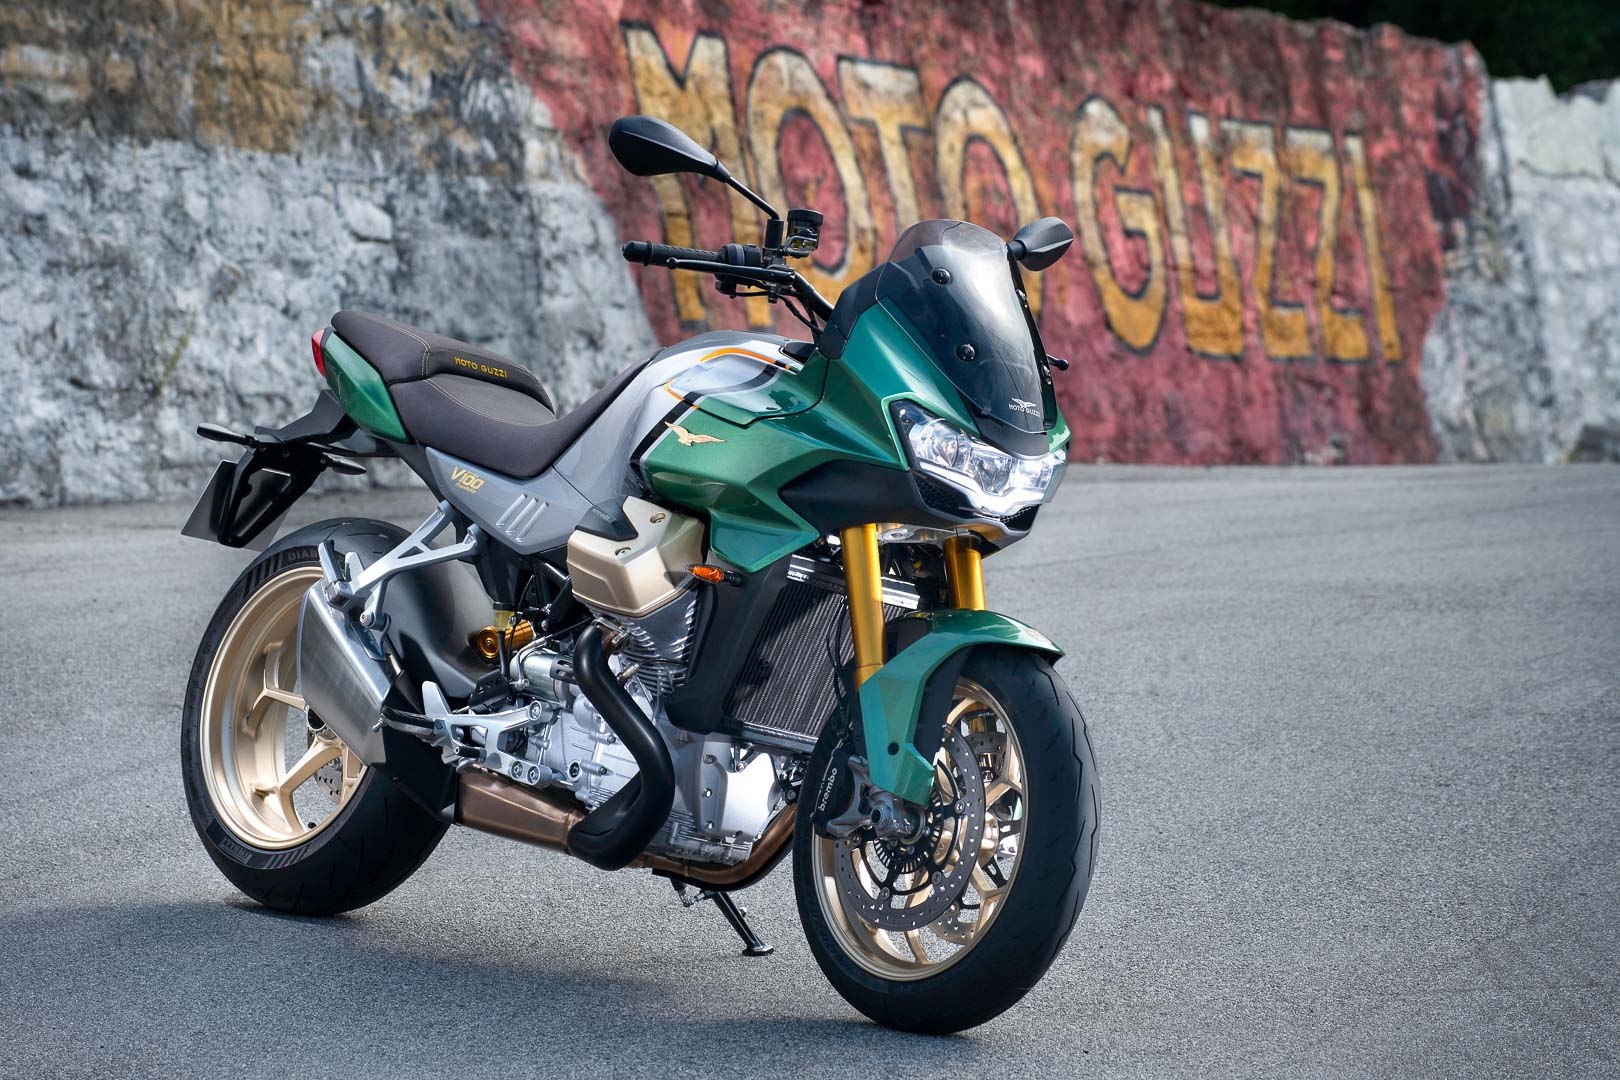 A view of the all-new Moto Guzzi V100 Mandello